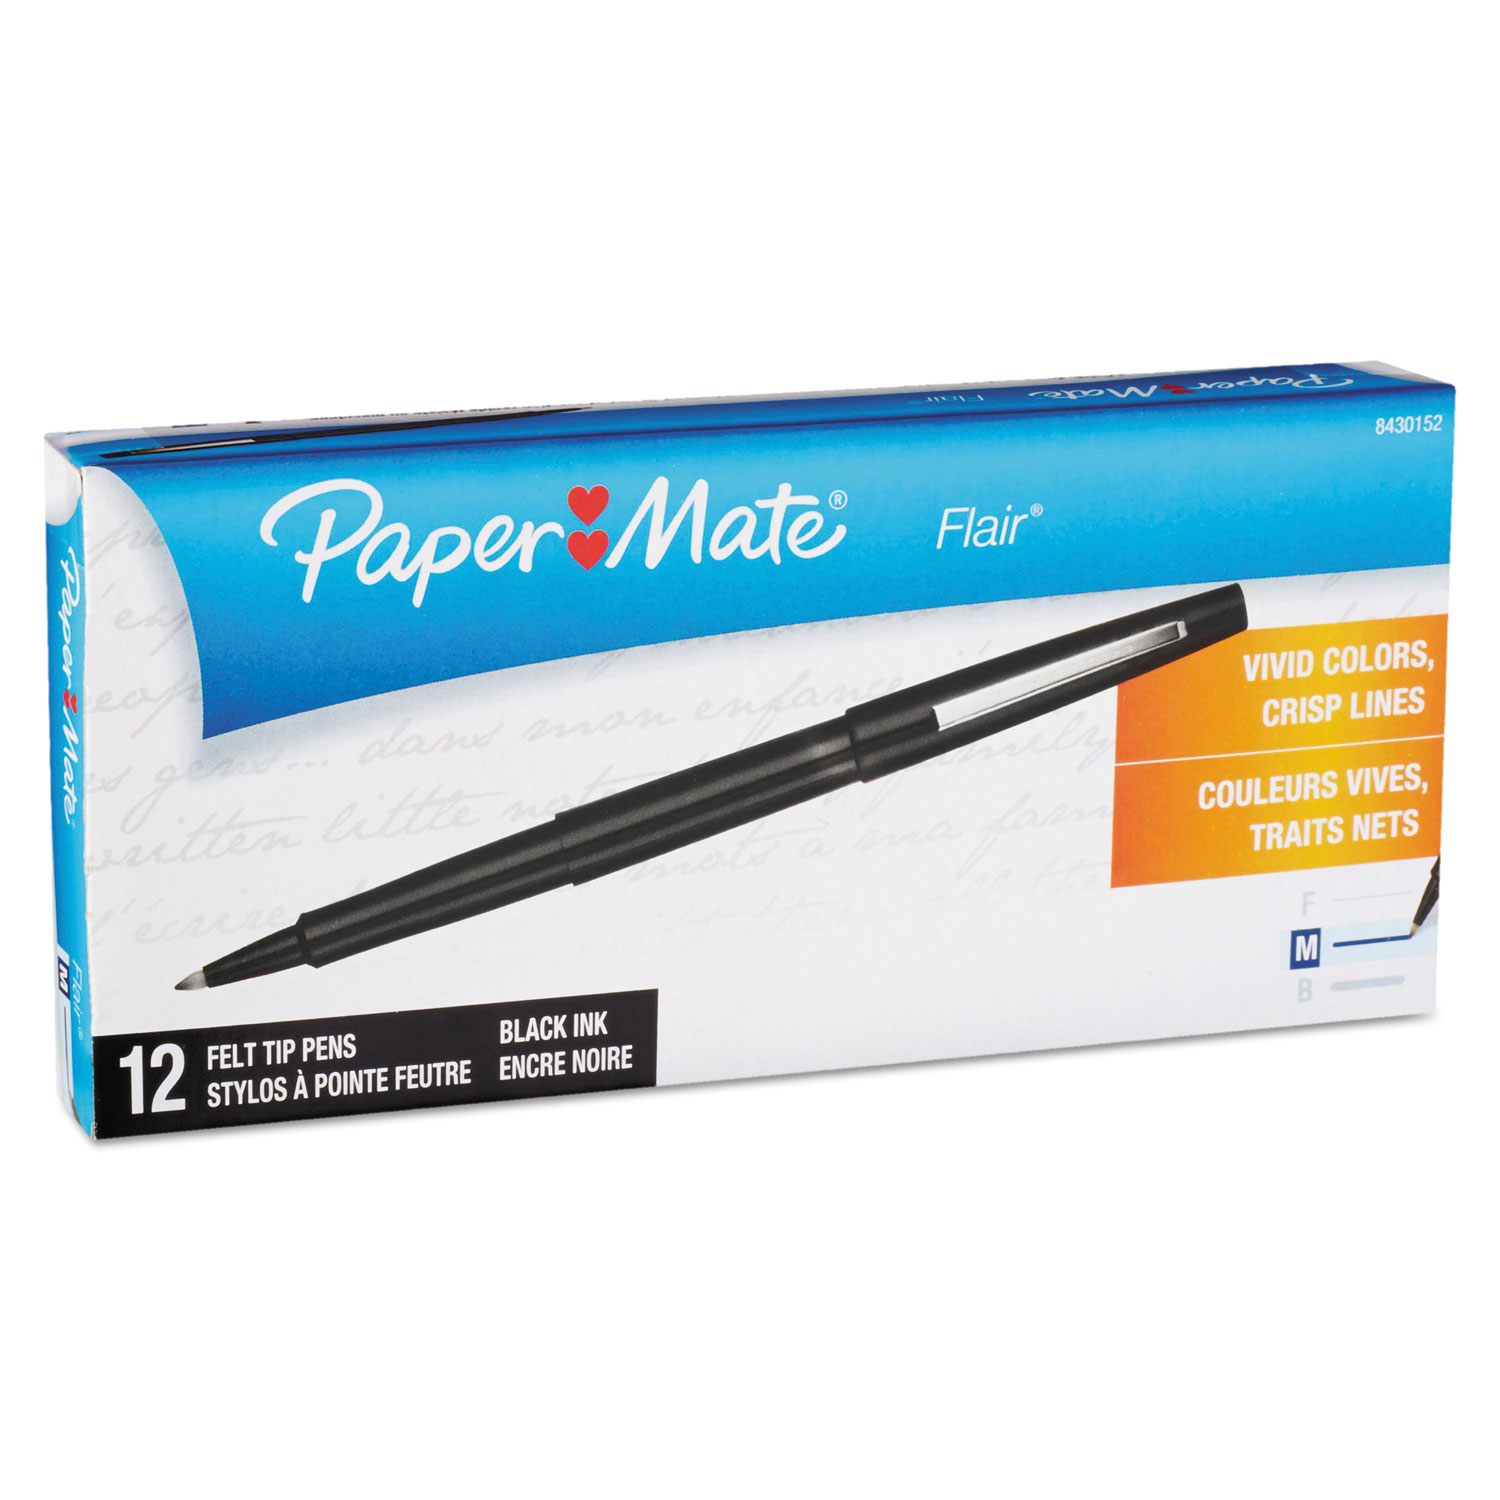  Paper Mate 8430152 Point Guard Flair Needle Tip Stick Porous Point Pen, 0.7mm, Black Ink/Barrel, Dozen (PAP8430152) 